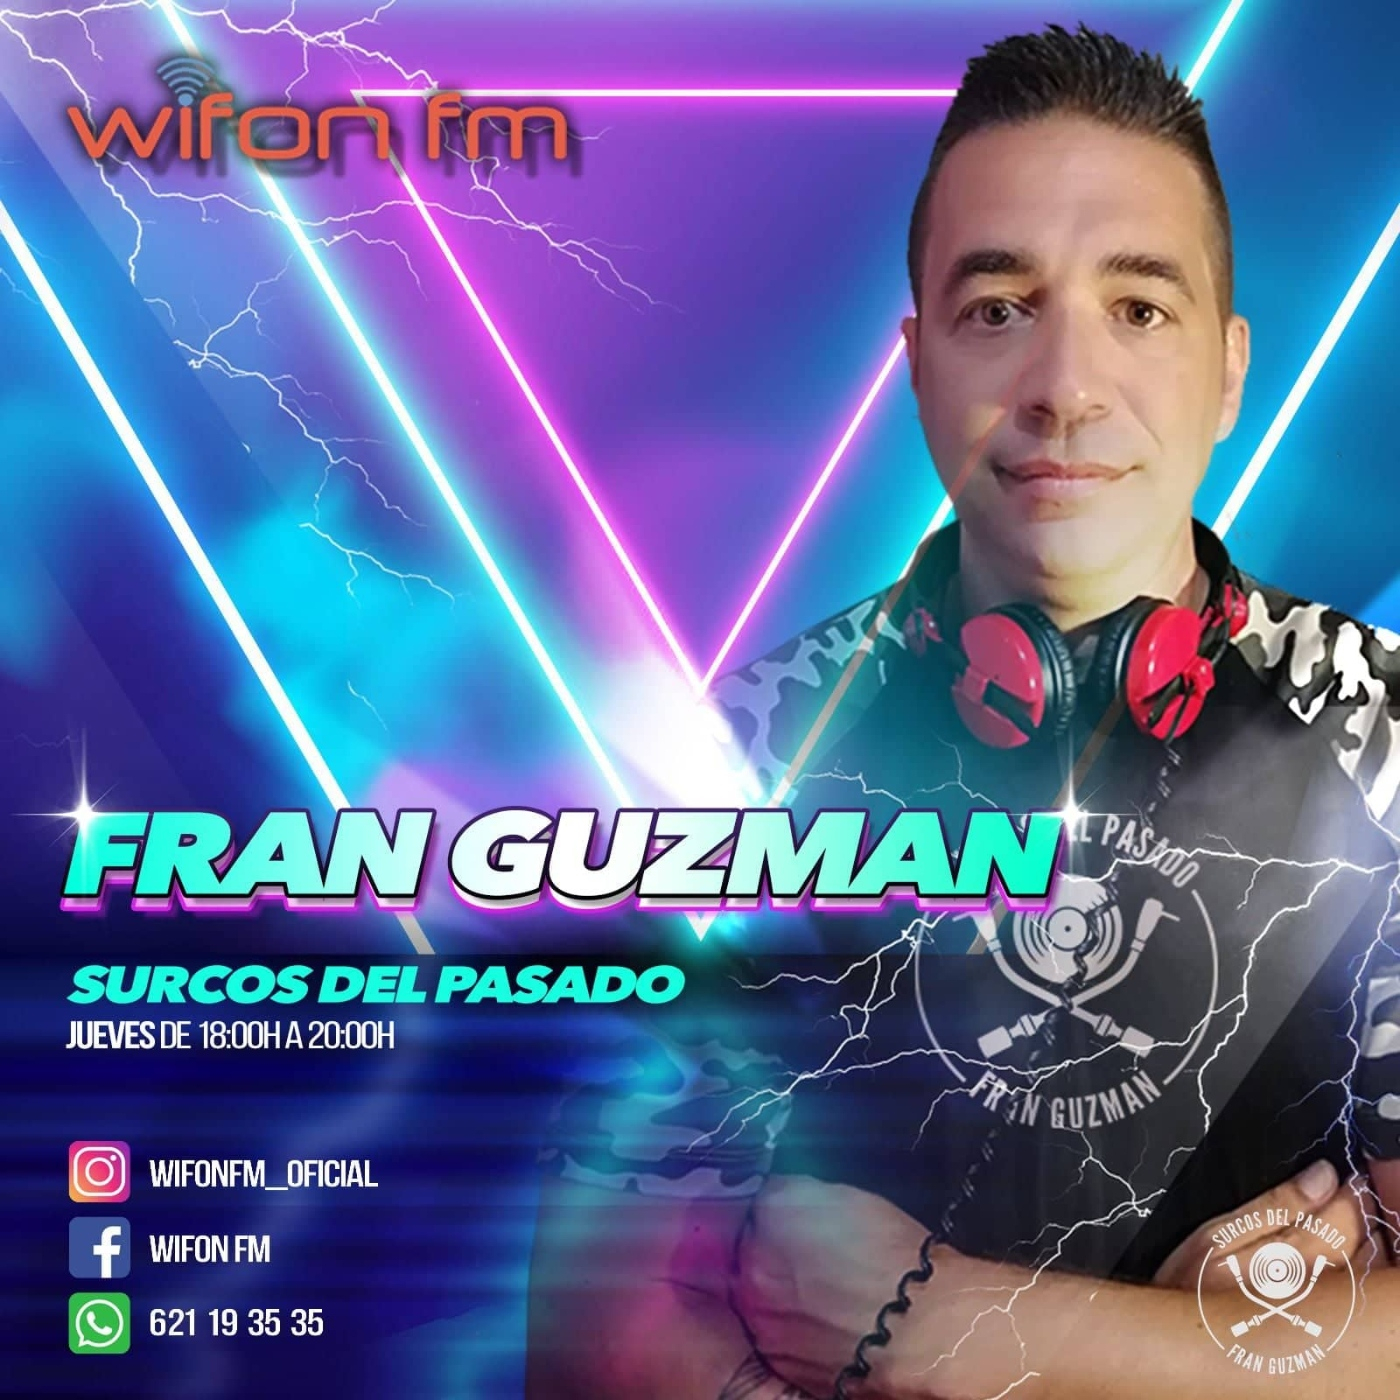 Fran Guzman Surcos del Pasado wifon T4.31